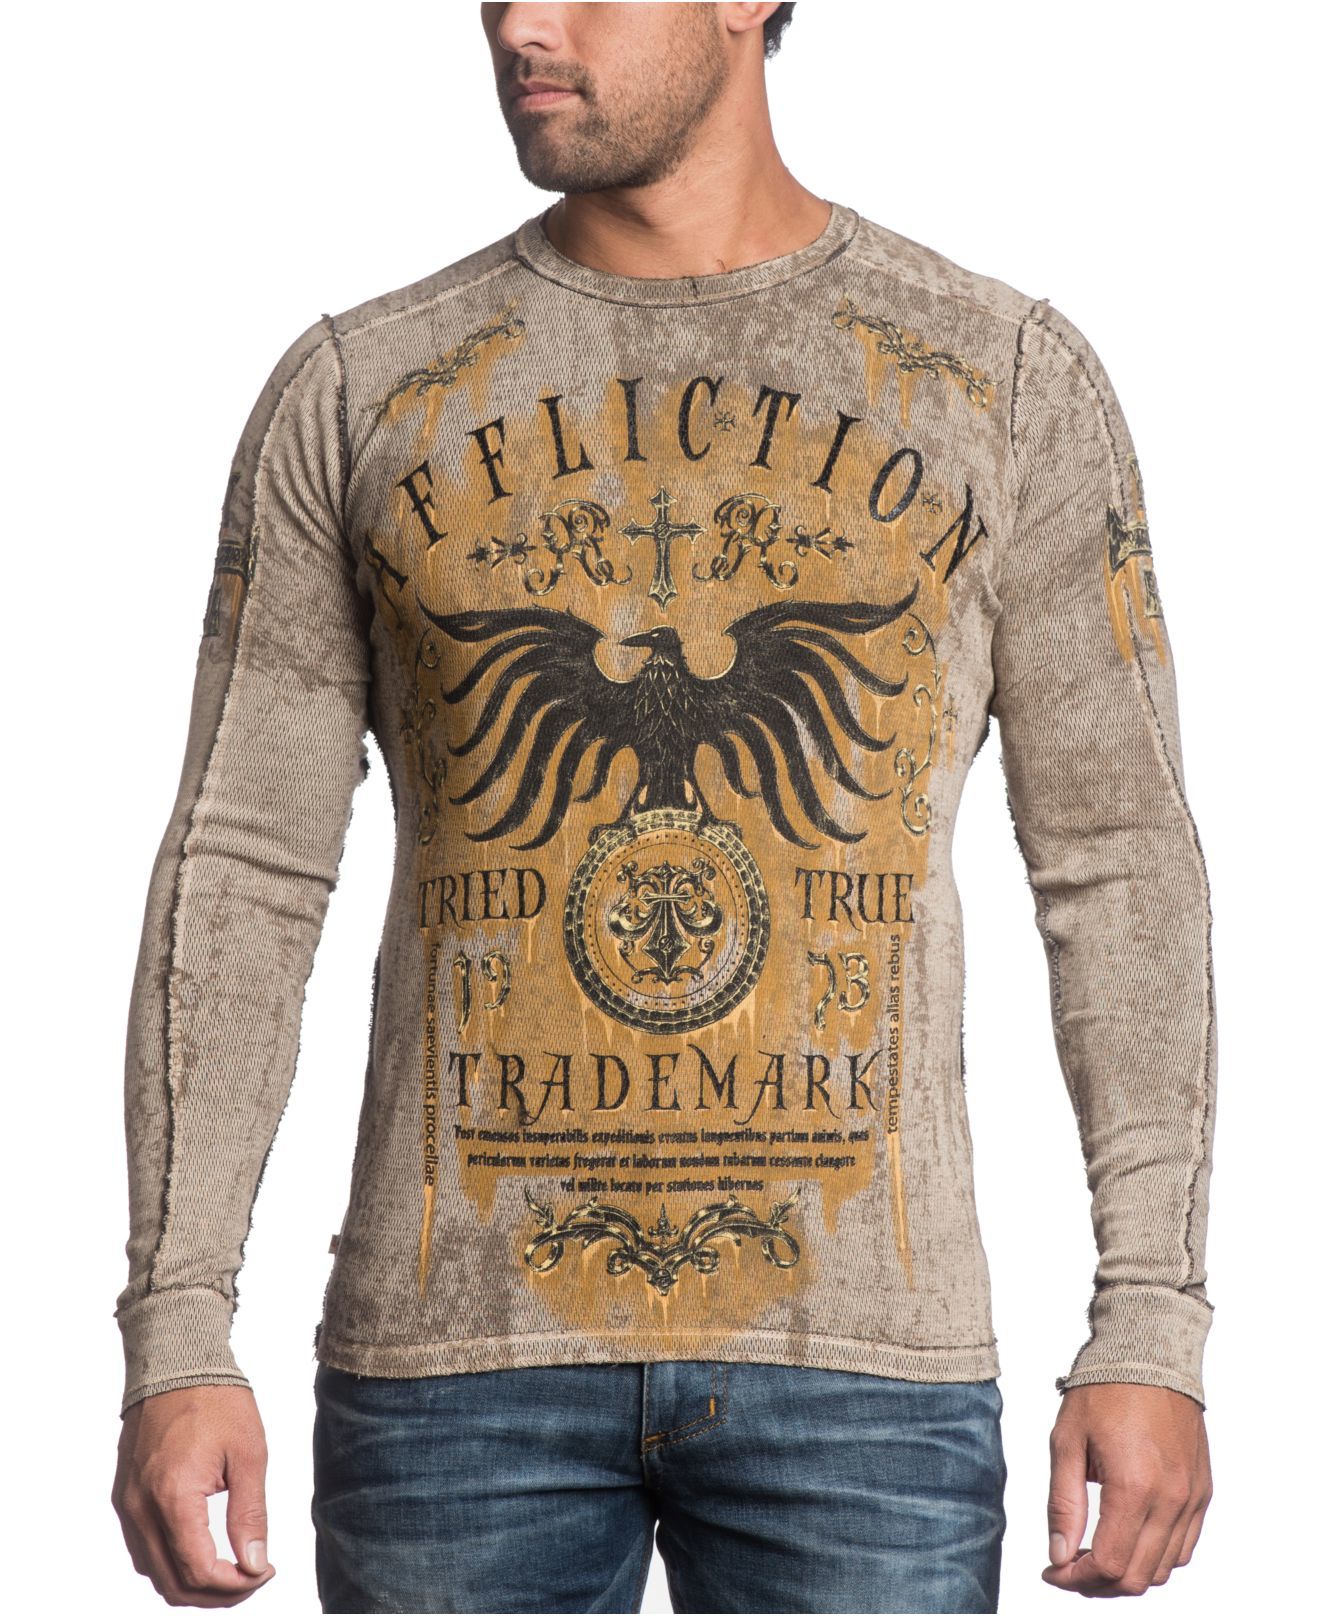 Men's Affliction Cotton T-Shirt